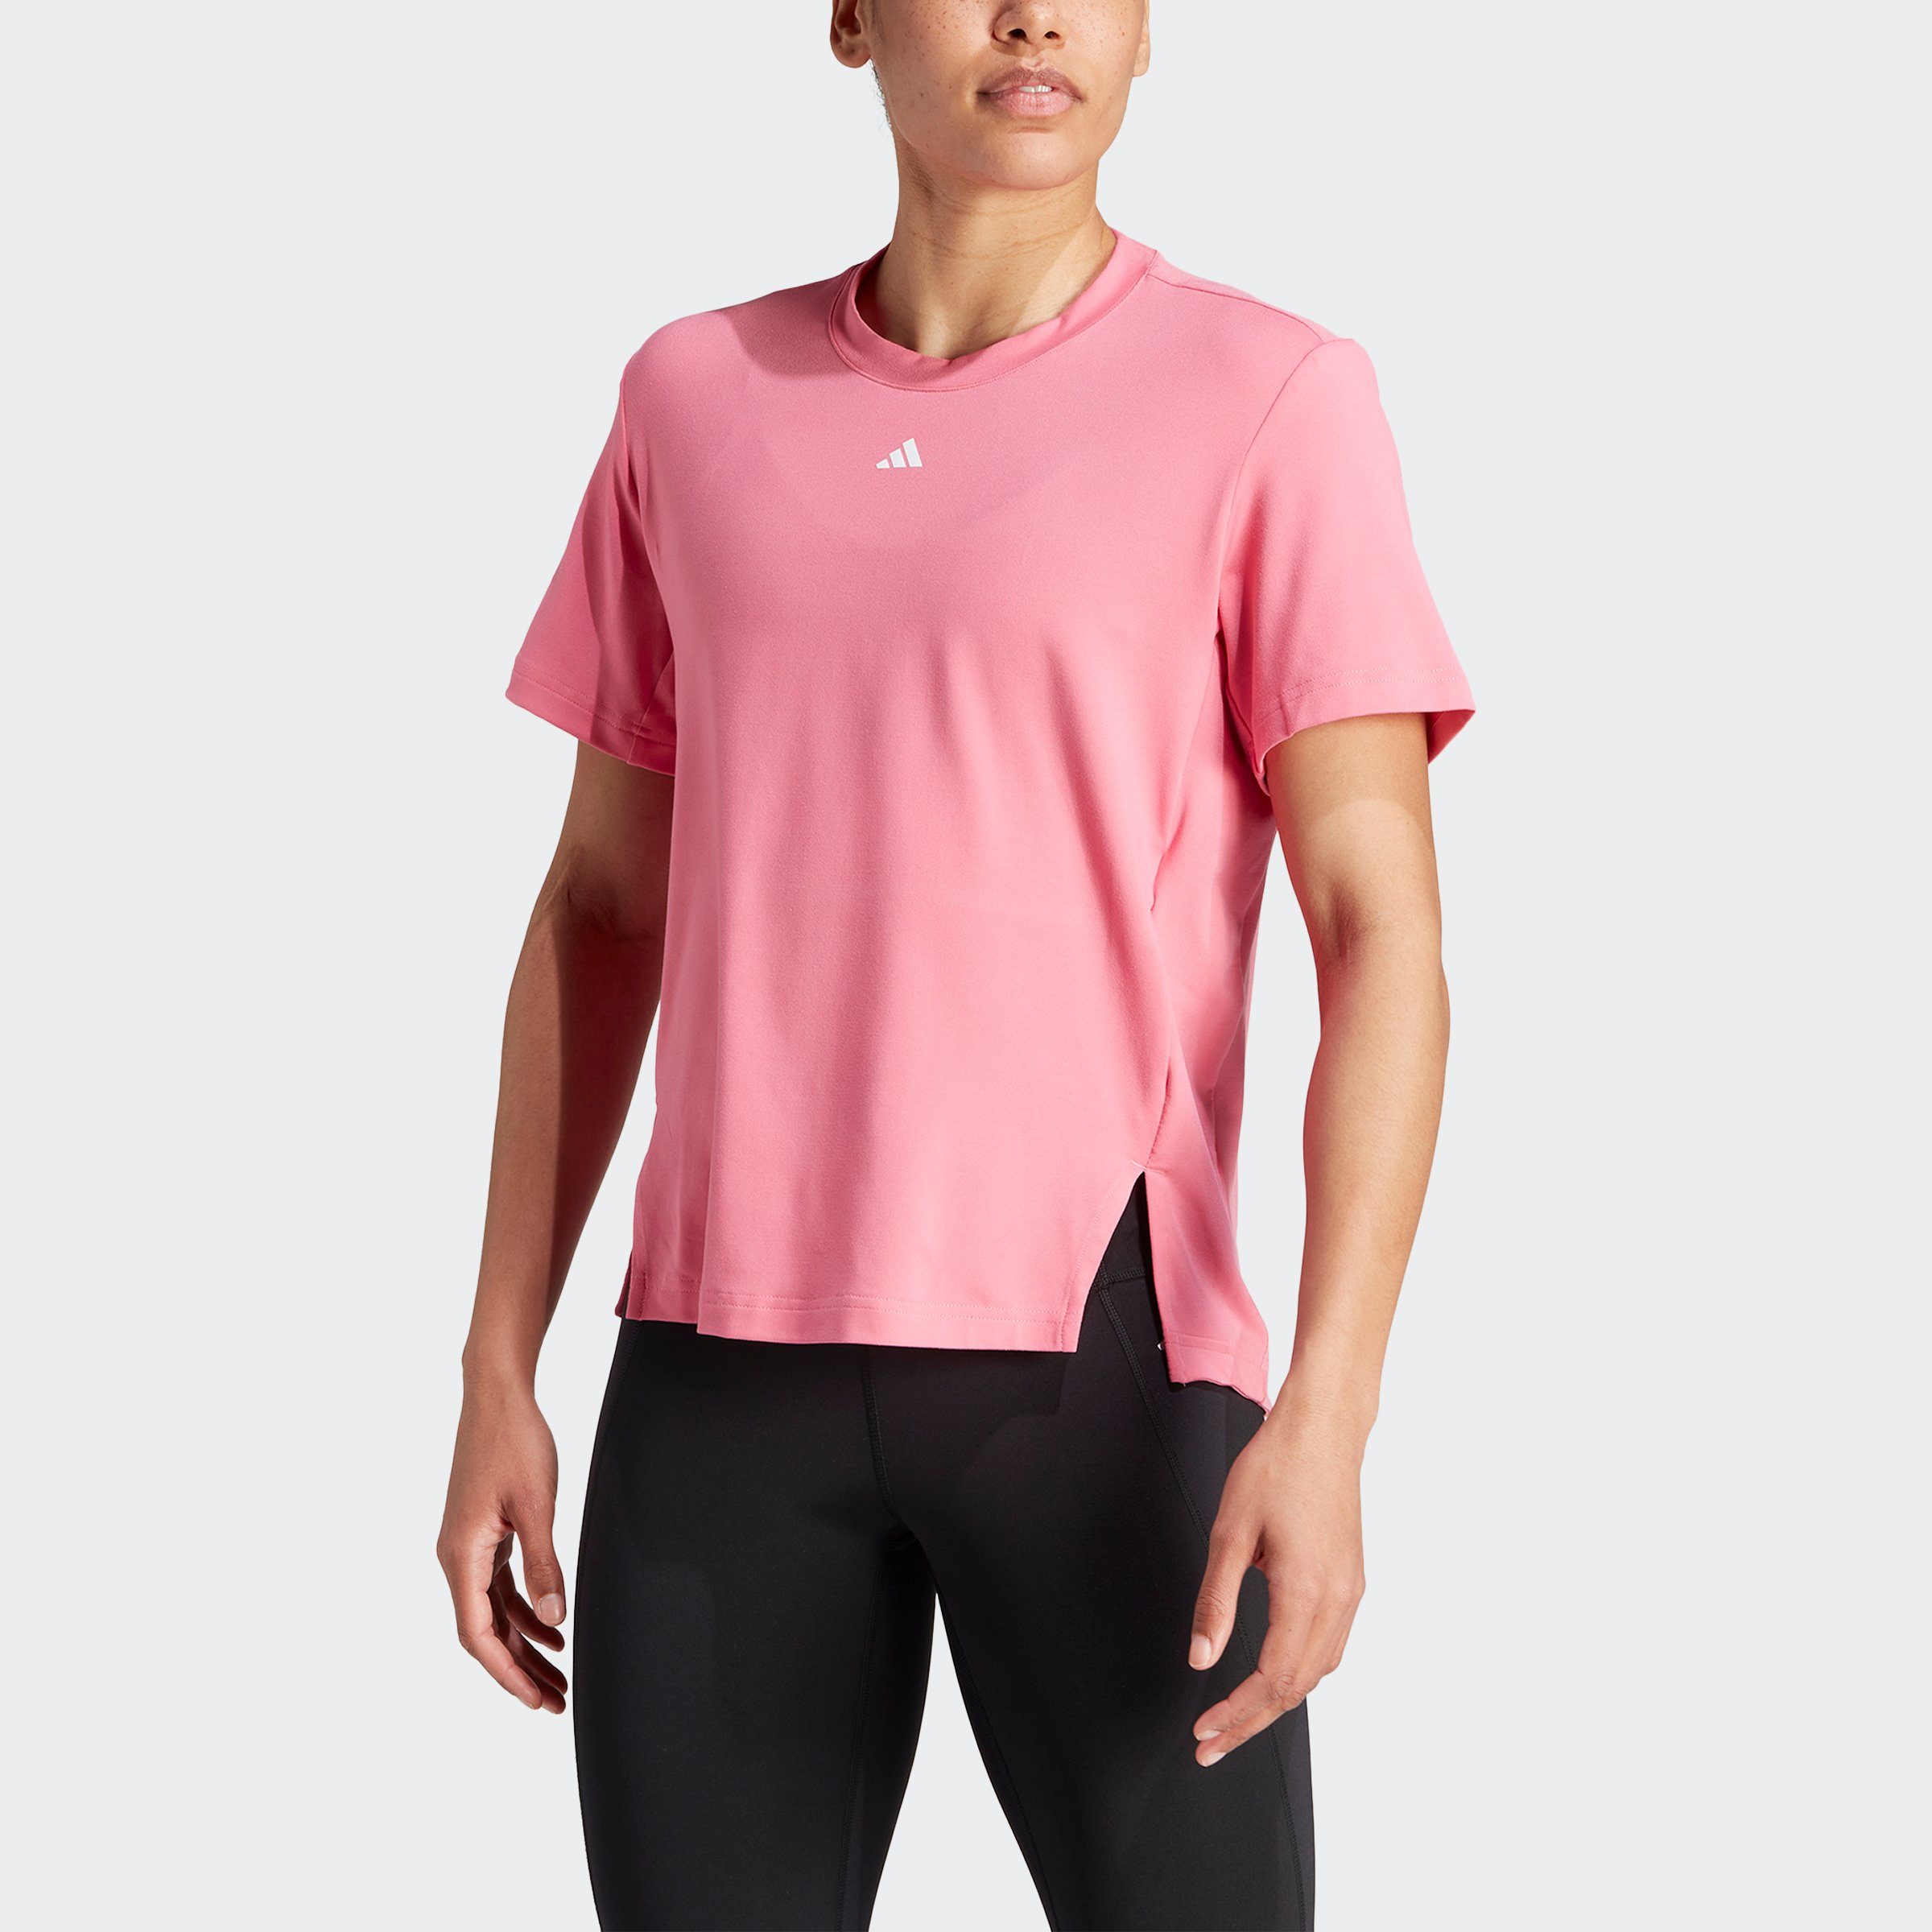 adidas / White T-Shirt VERSATILE Pink Fusion Performance